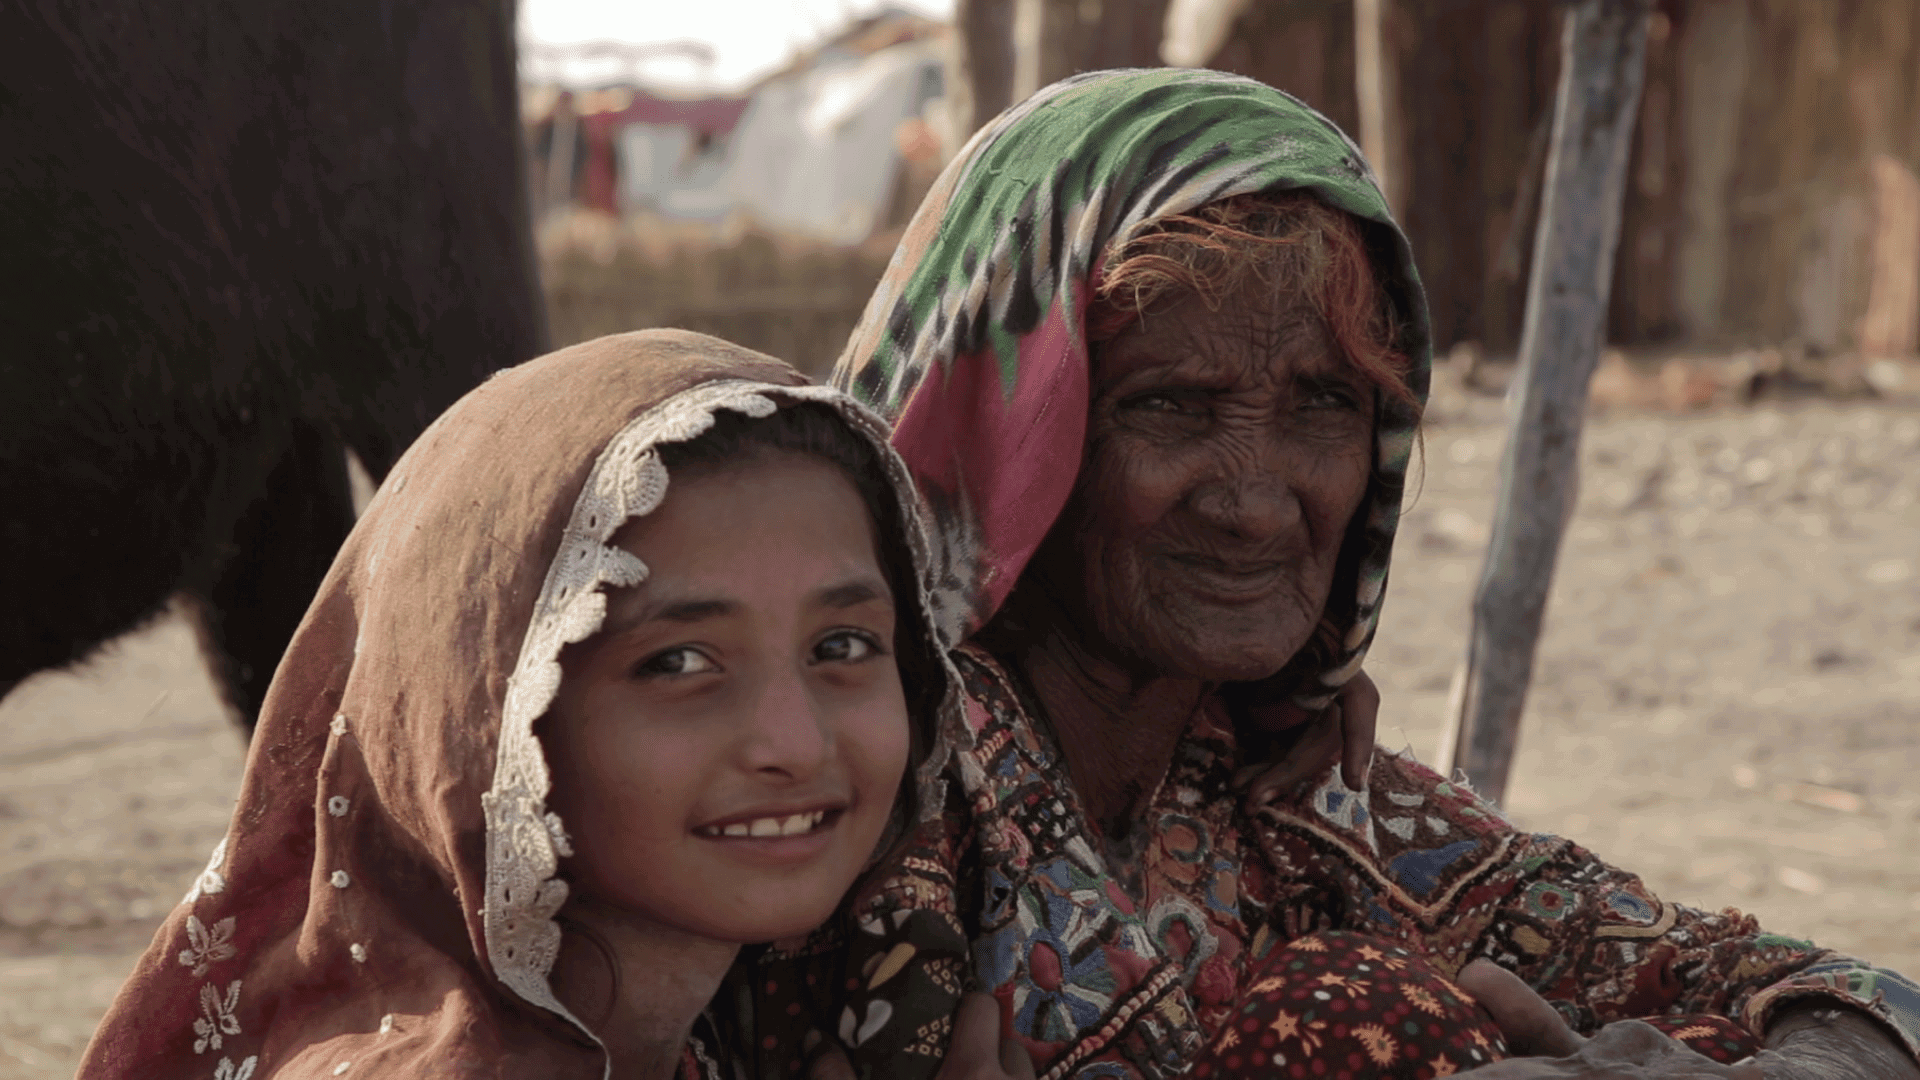 Pakistan grandma and granddaughter